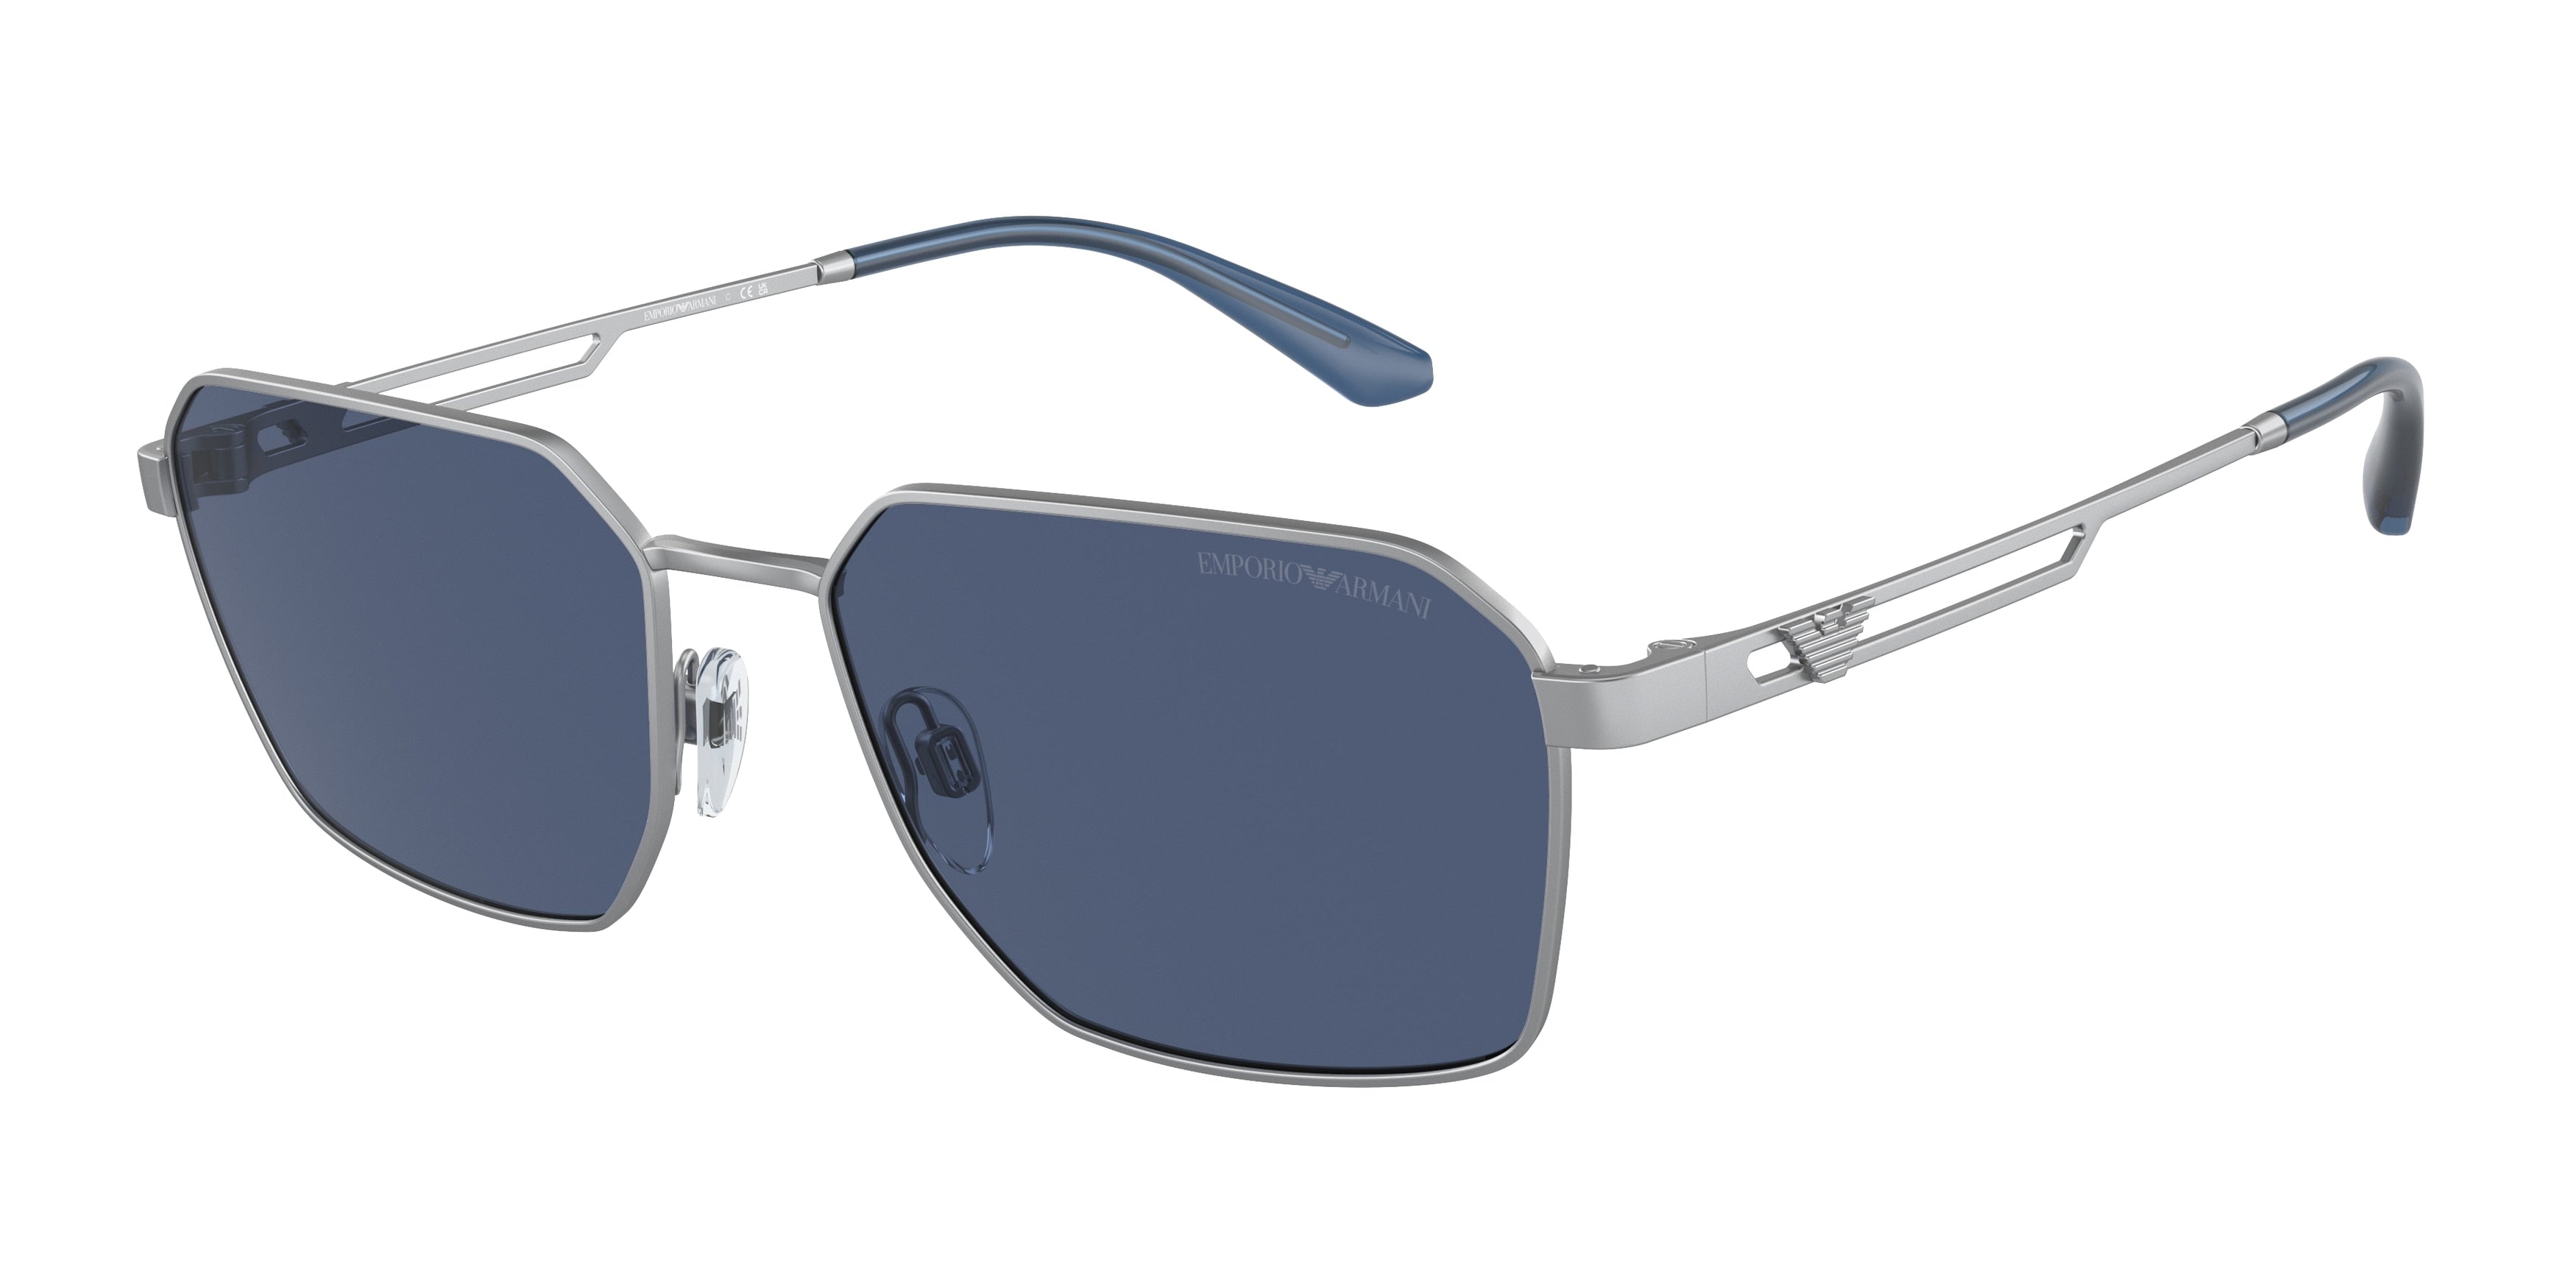 Emporio Armani Hard Case Sunglasses - Buy Emporio Armani Hard Case Sunglasses  online in India